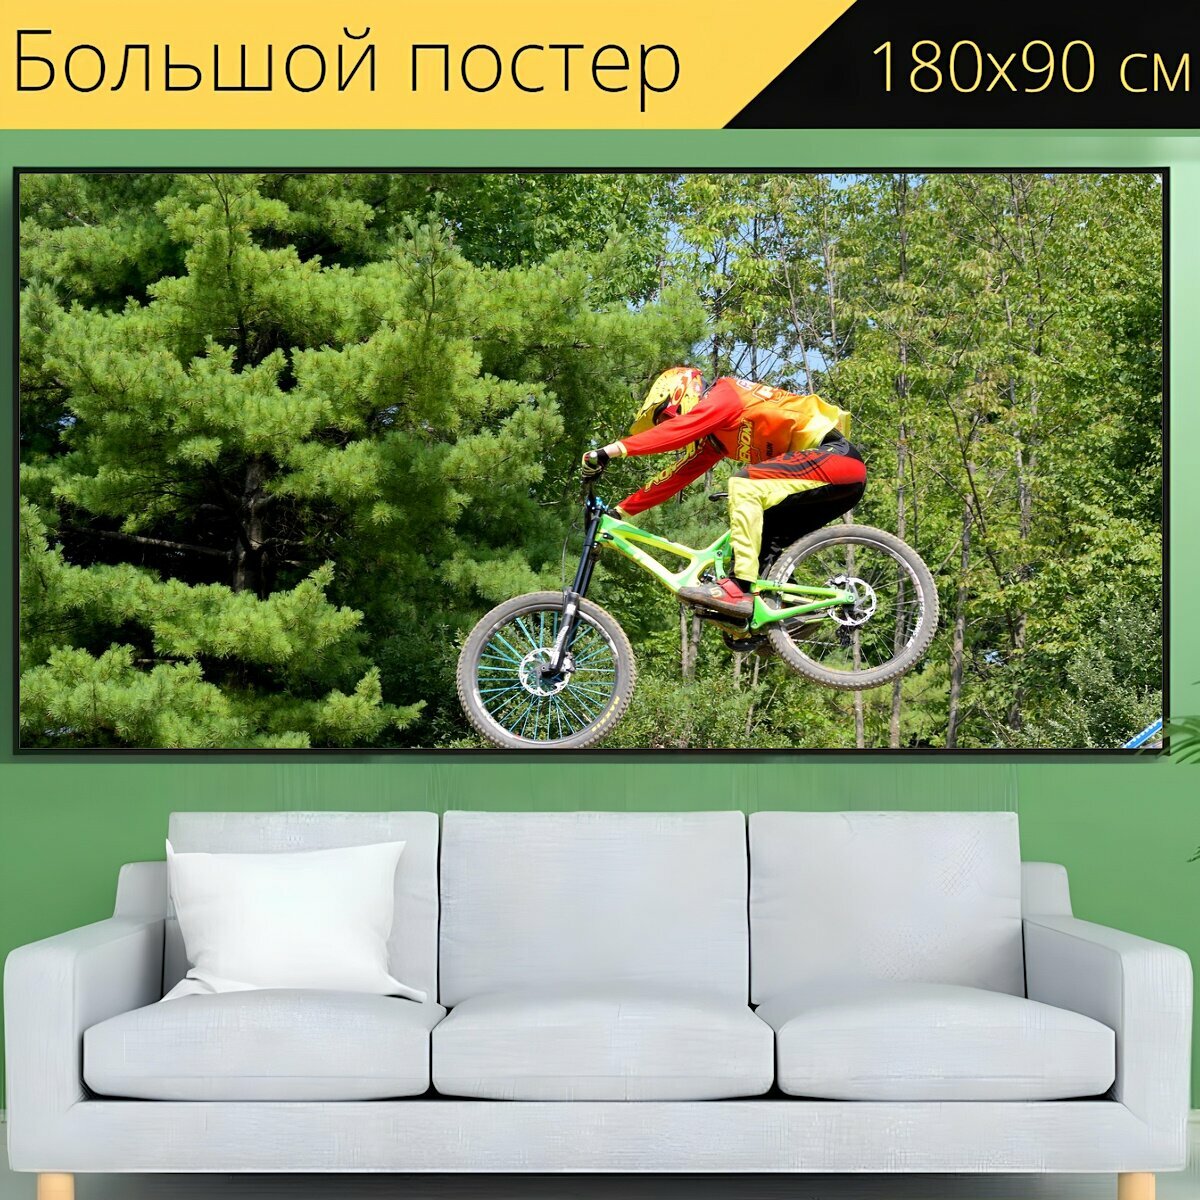 Большой постер "Байкер, горный велосипед, прыгать" 180 x 90 см. для интерьера